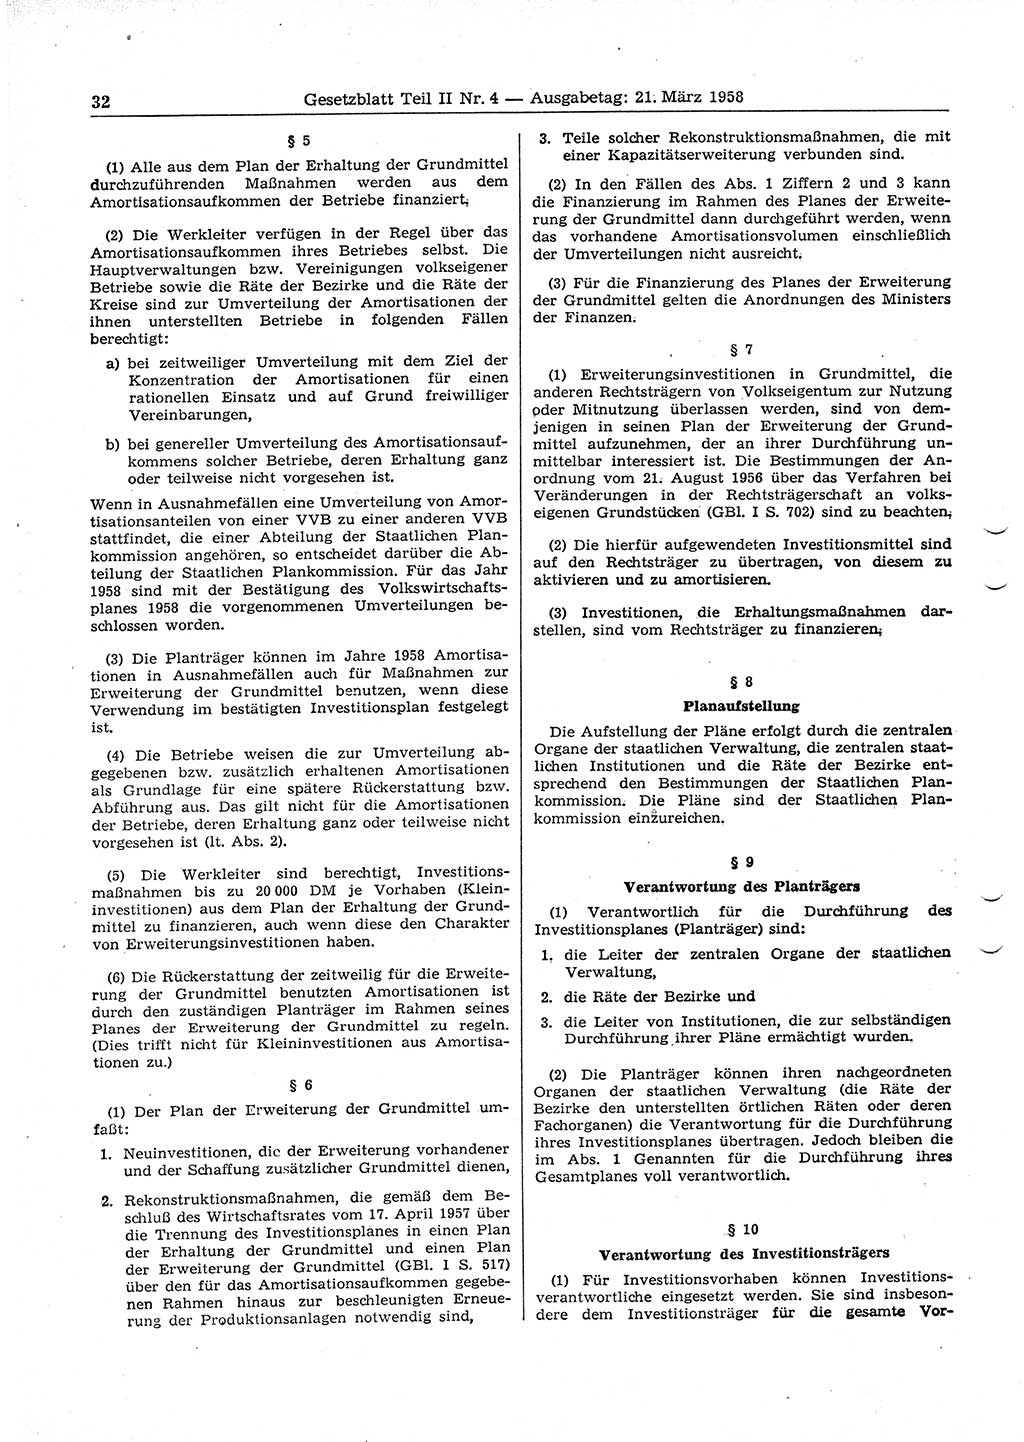 Gesetzblatt (GBl.) der Deutschen Demokratischen Republik (DDR) Teil ⅠⅠ 1958, Seite 32 (GBl. DDR ⅠⅠ 1958, S. 32)